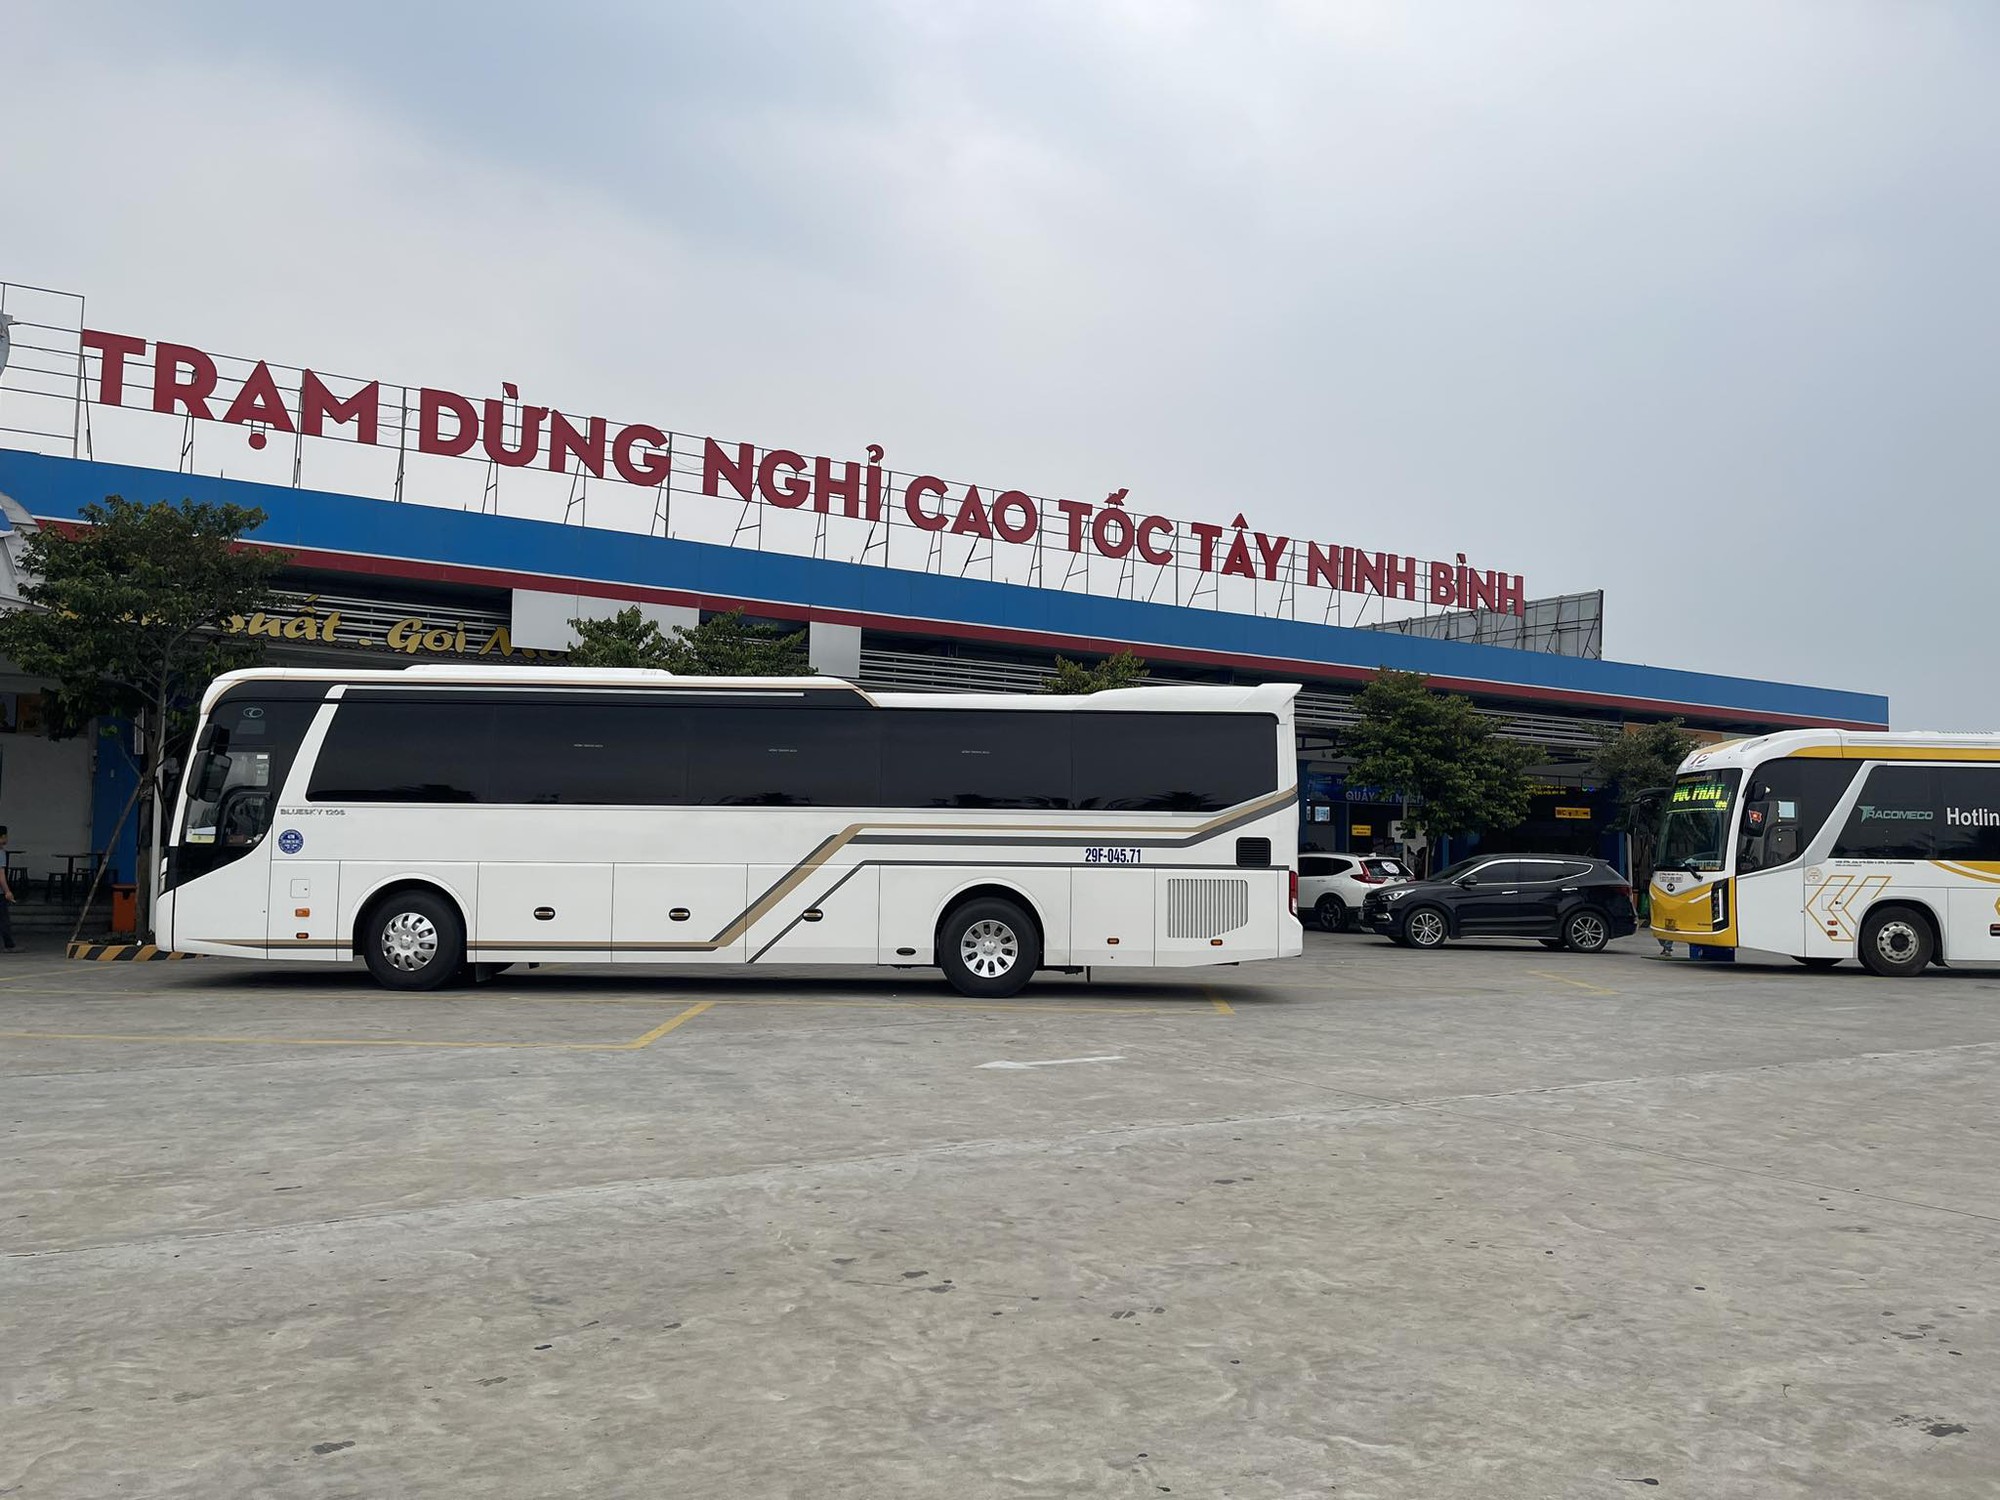 Hai trạm dừng nghỉ trên cao tốc Vĩnh Hảo - Phan Thiết sắp được khởi công - Ảnh 1.